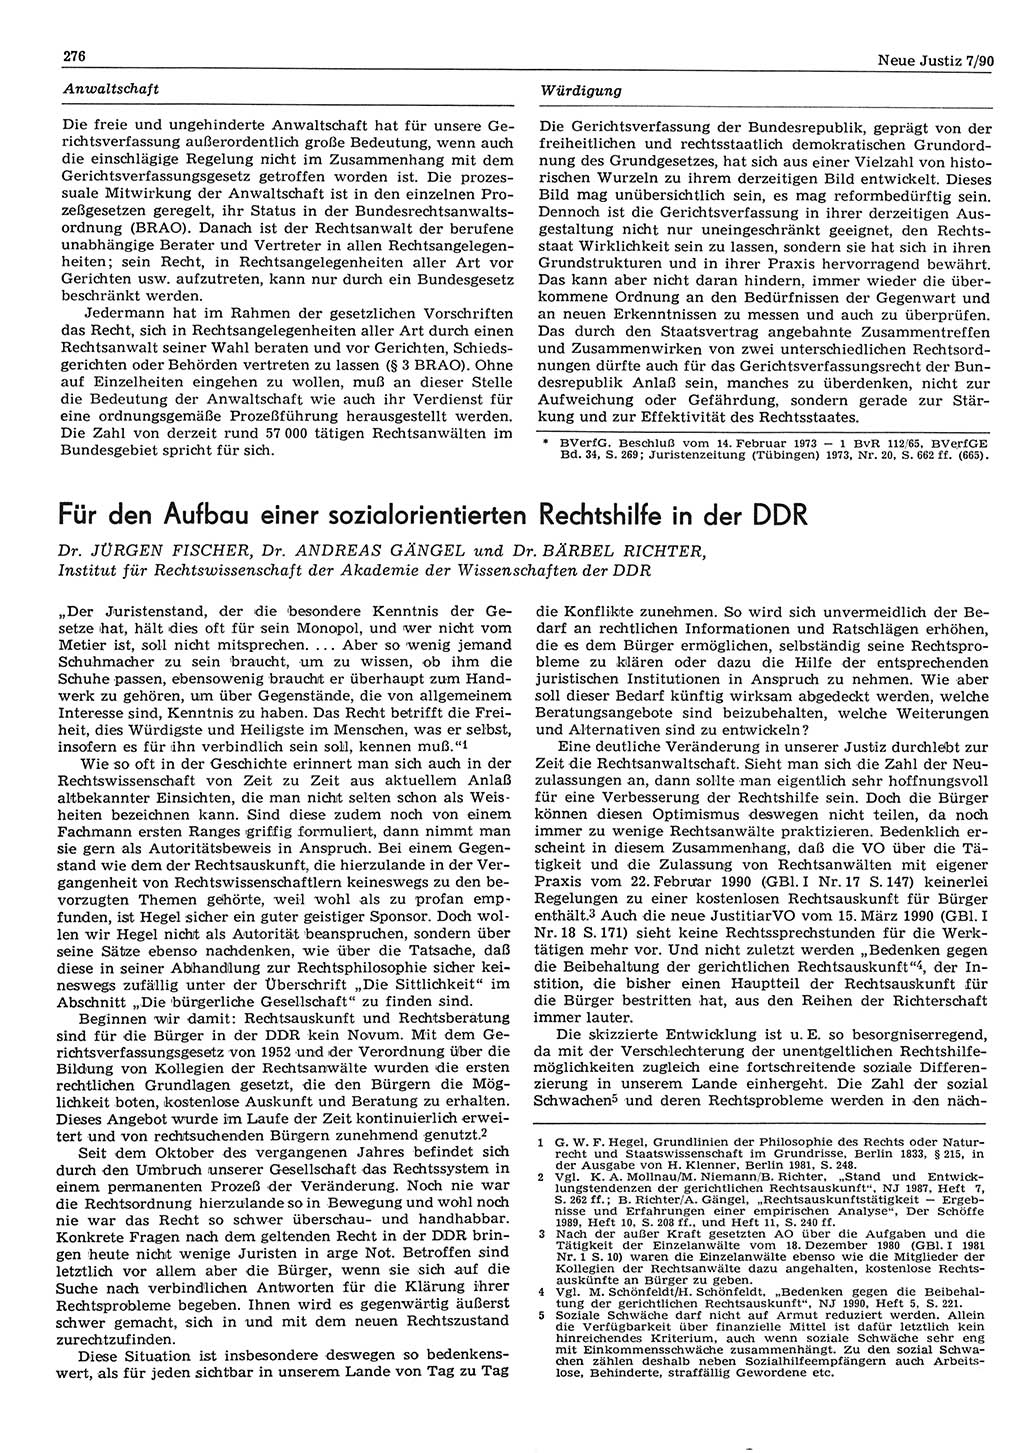 Neue Justiz (NJ), Zeitschrift für Rechtsetzung und Rechtsanwendung [Deutsche Demokratische Republik (DDR)], 44. Jahrgang 1990, Seite 276 (NJ DDR 1990, S. 276)